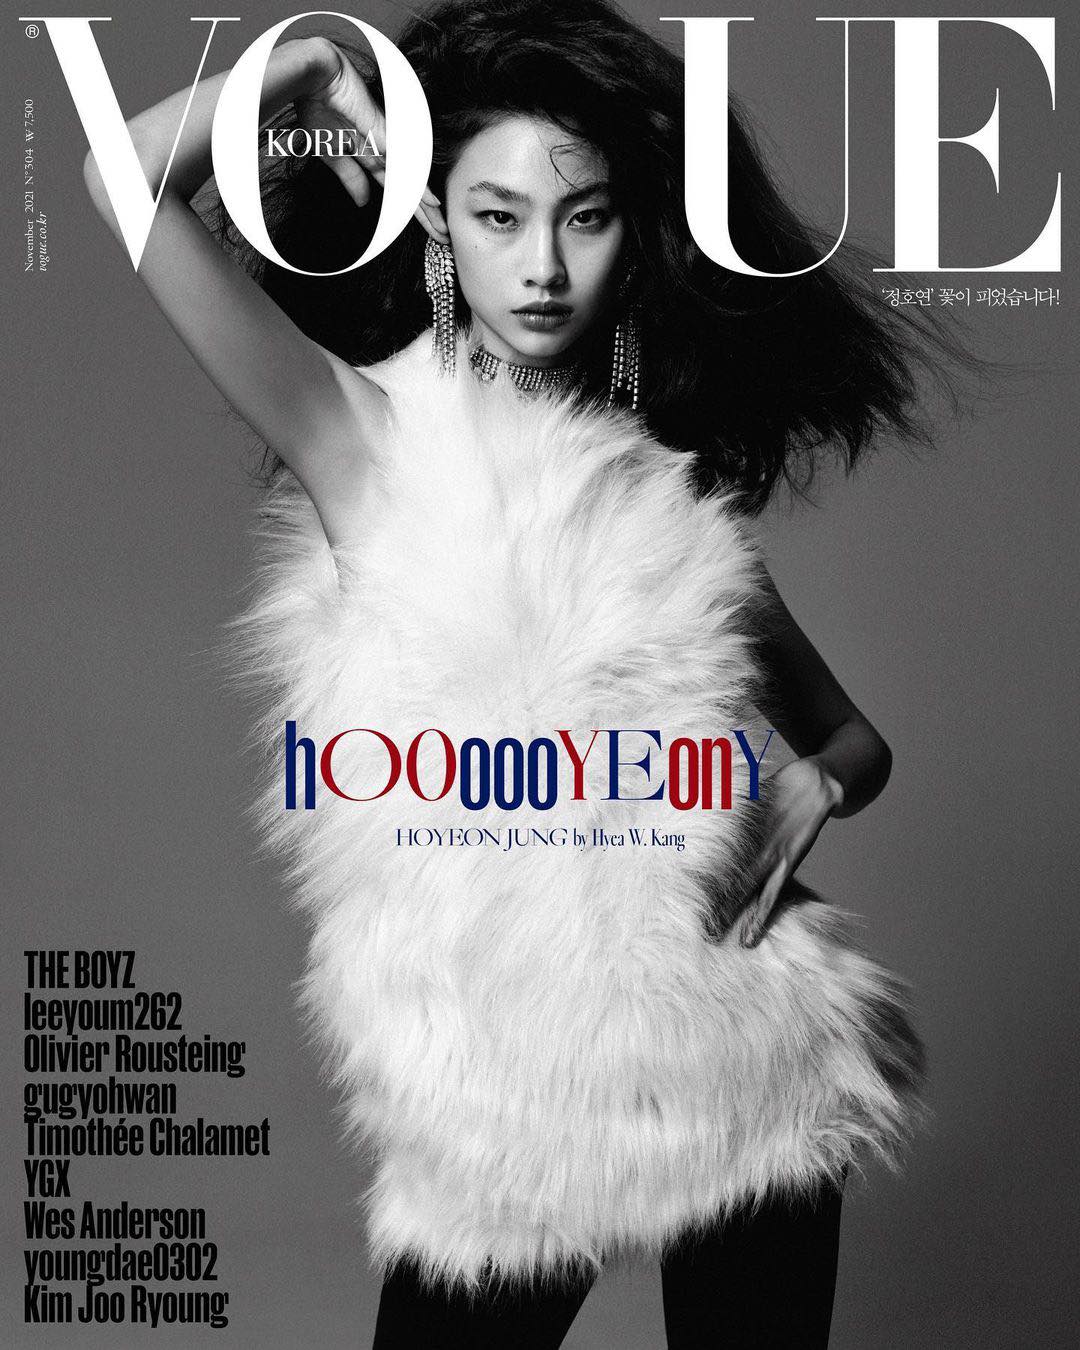 Thân là Đại sứ toàn cầu của Louis Vuitton nhưng Jung Ho Yeon lại xuất hiện trên bìa tạp chí Vogue với set đồ của thương hiệu Saint Laurent khiến giới mộ điệu cảm thấy bối rối.